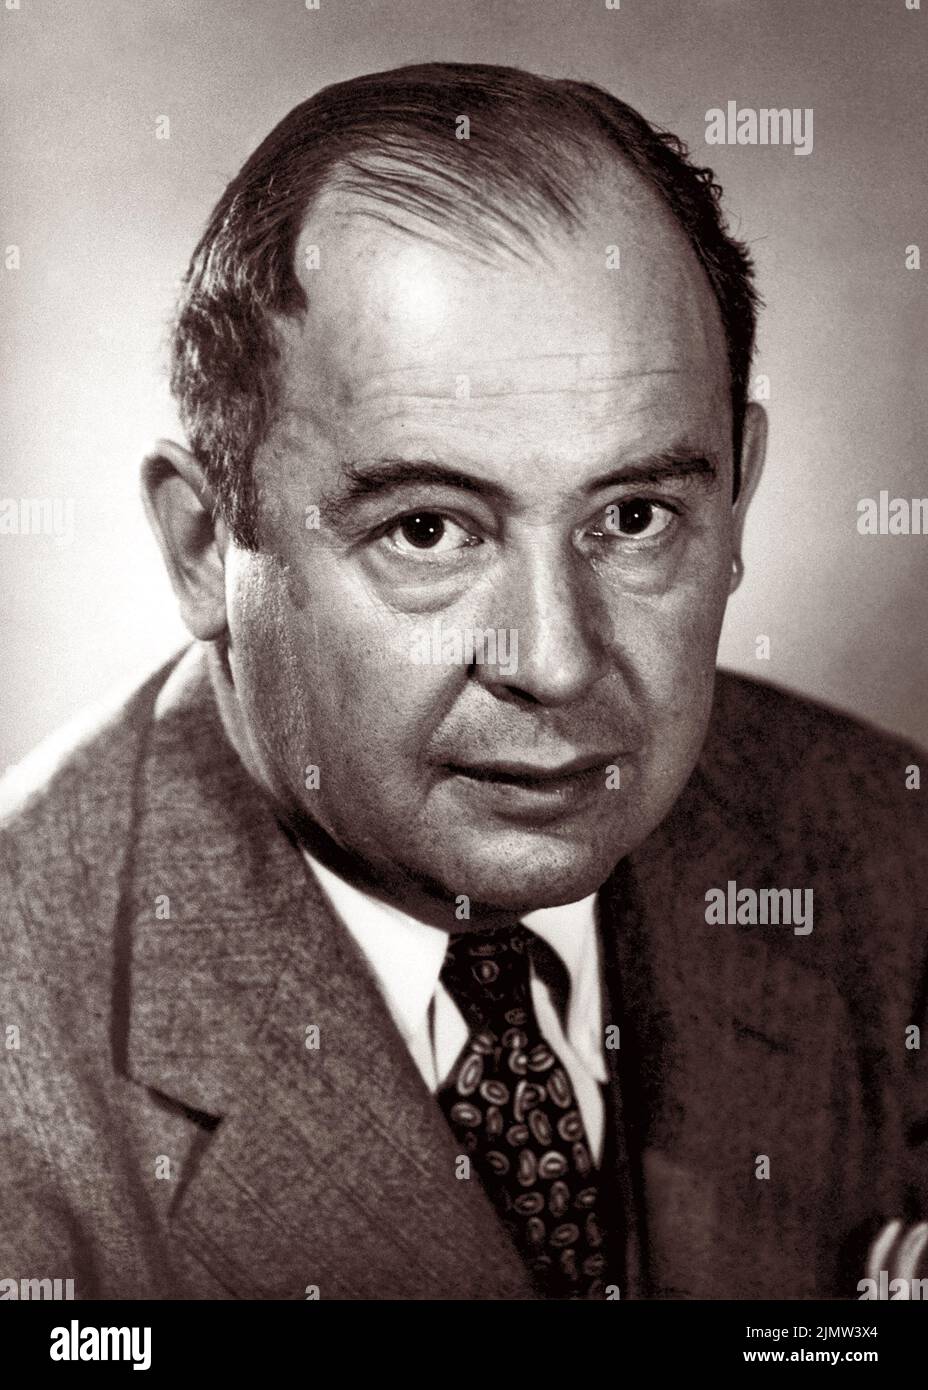 John von Neumann (1903-1957), mathématicien hongrois-américain, physicien, informaticien, ingénieur et polymath. Von Neumann a apporté des contributions majeures à un grand nombre de domaines. Pendant la Seconde Guerre mondiale, il a travaillé sur le projet Manhattan et est devenu plus tard commissaire de la Commission de l'énergie atomique des États-Unis. Photo : 1956. Banque D'Images